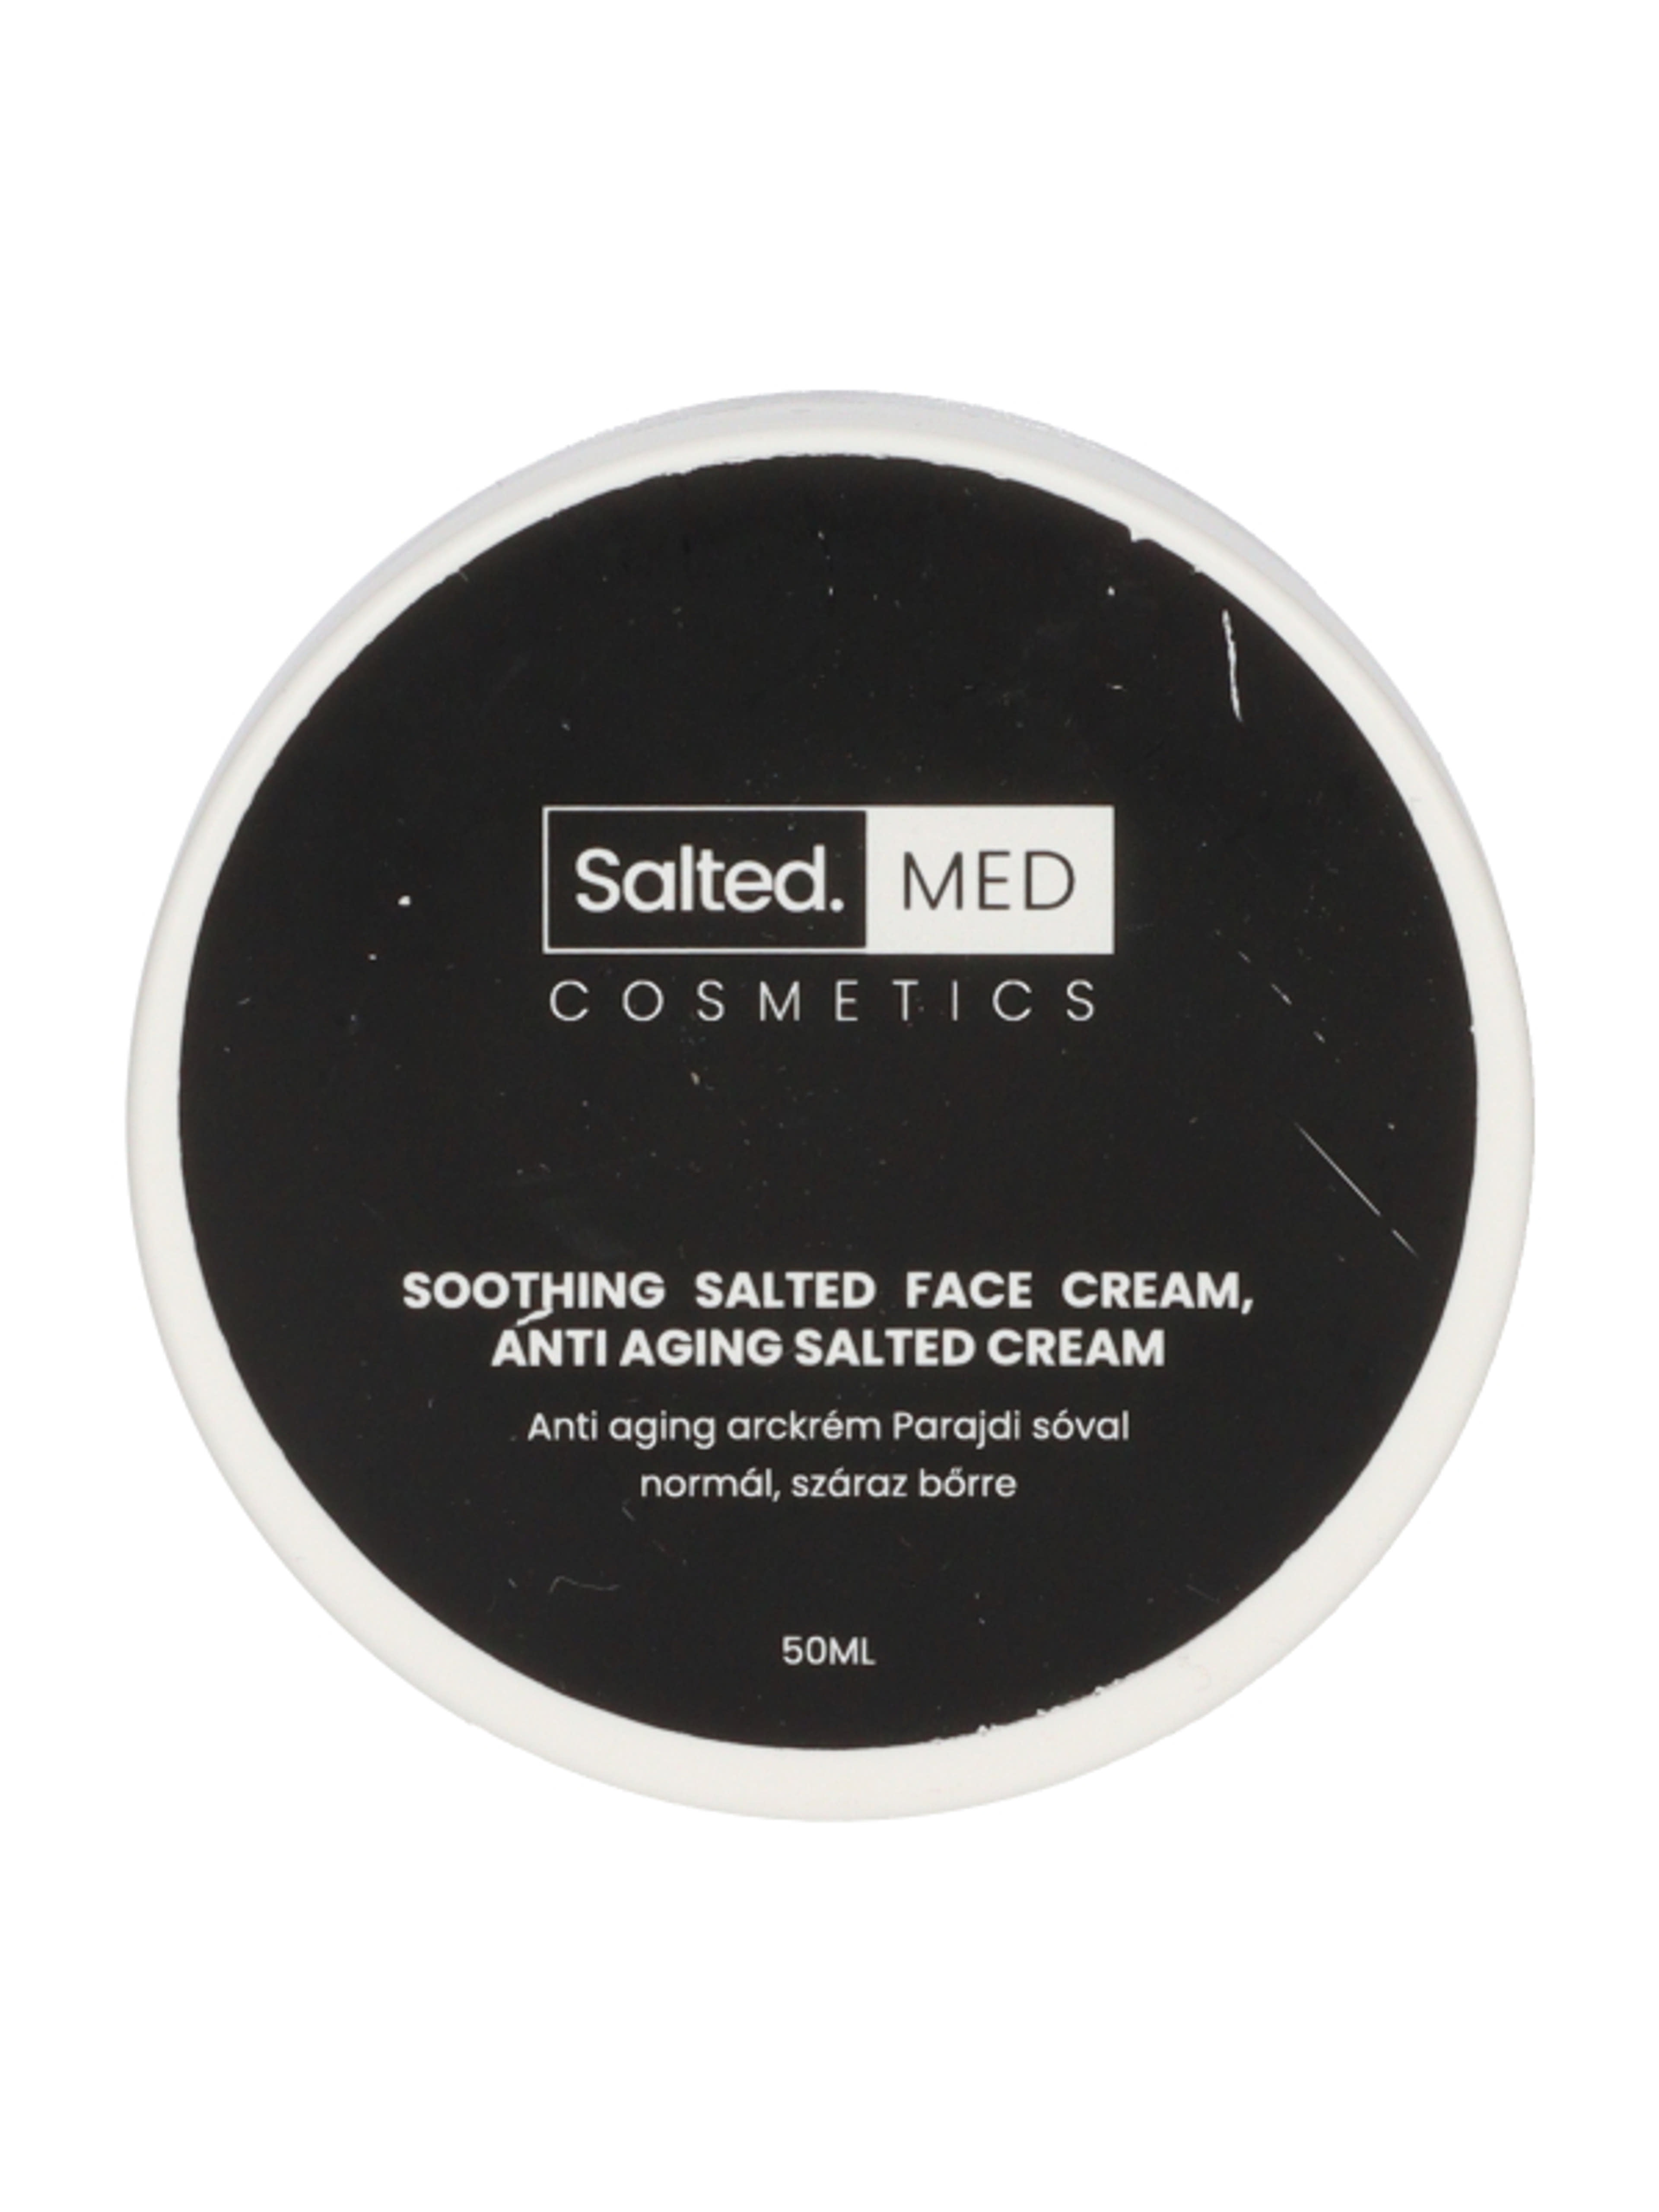 SaltedMED Anti-aging arckrém Parajdi sóval normál, száraz bőrre - 50 ml